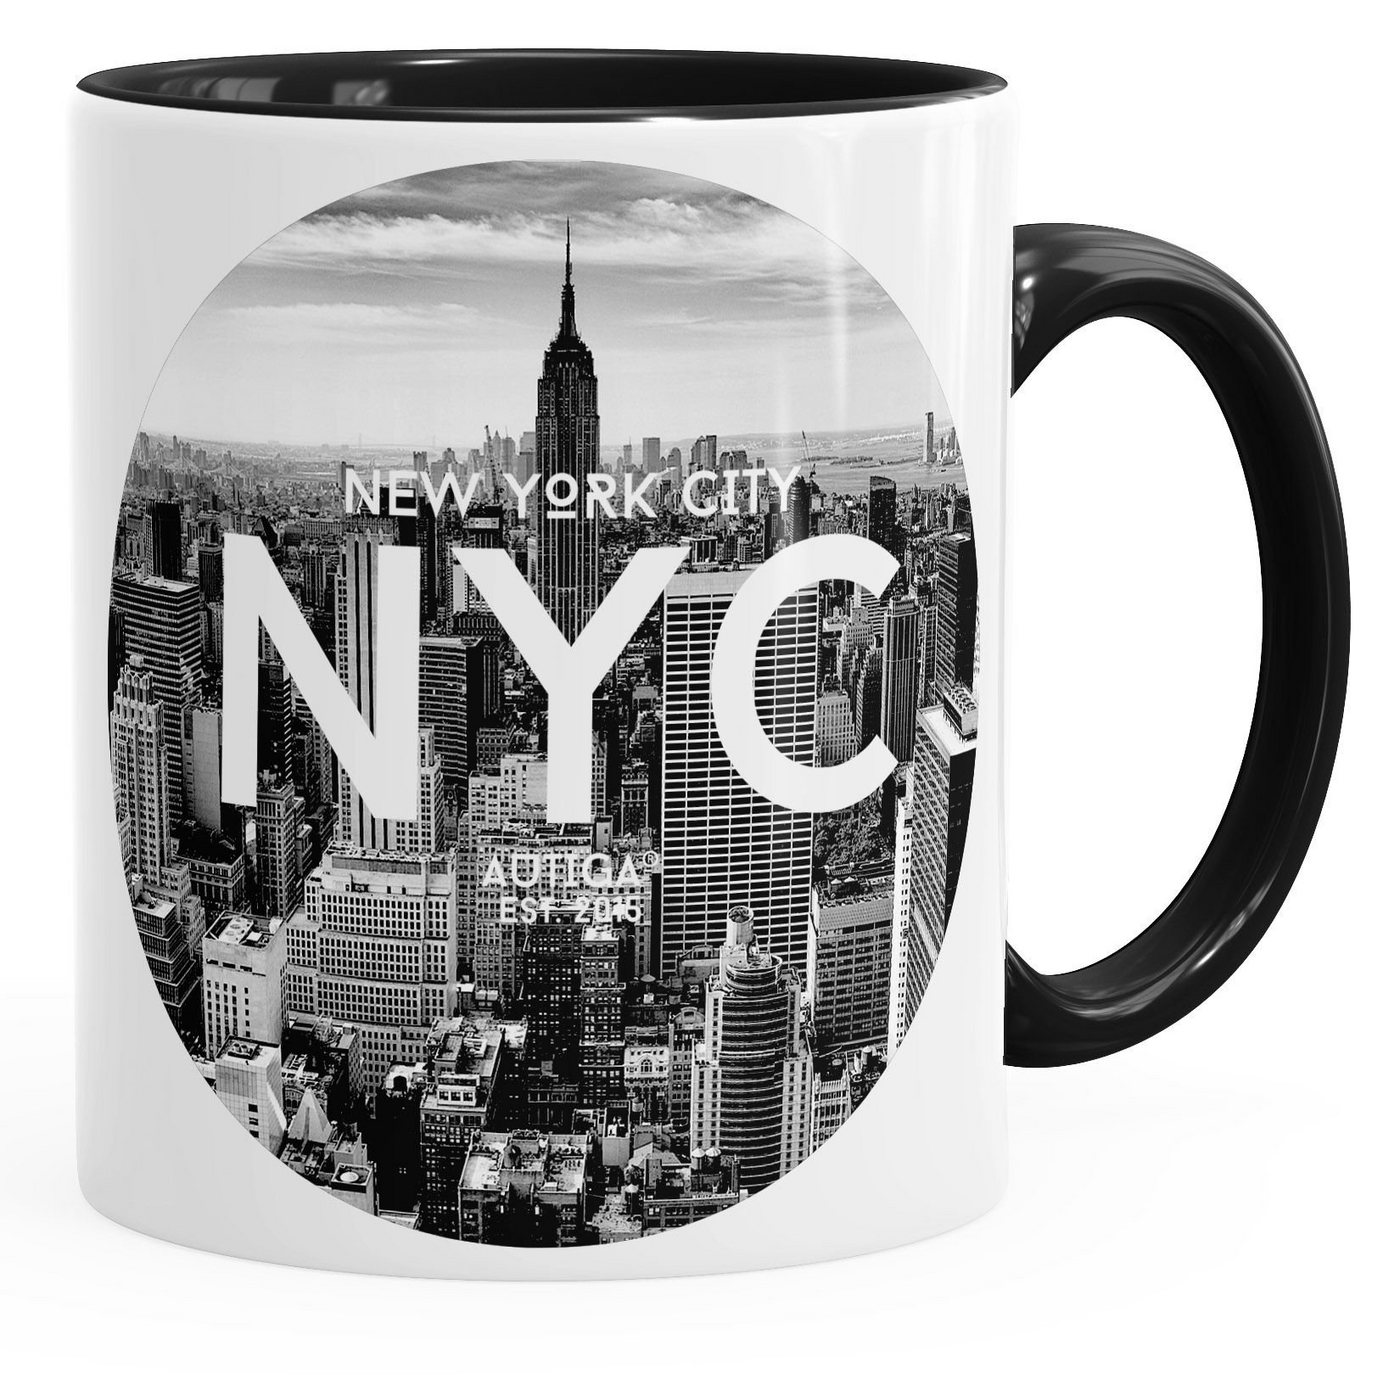 Autiga Tasse Tasse mit New York City Fotoprint Manhattan Rockefeller Center NYC Autiga®, Keramik von Autiga